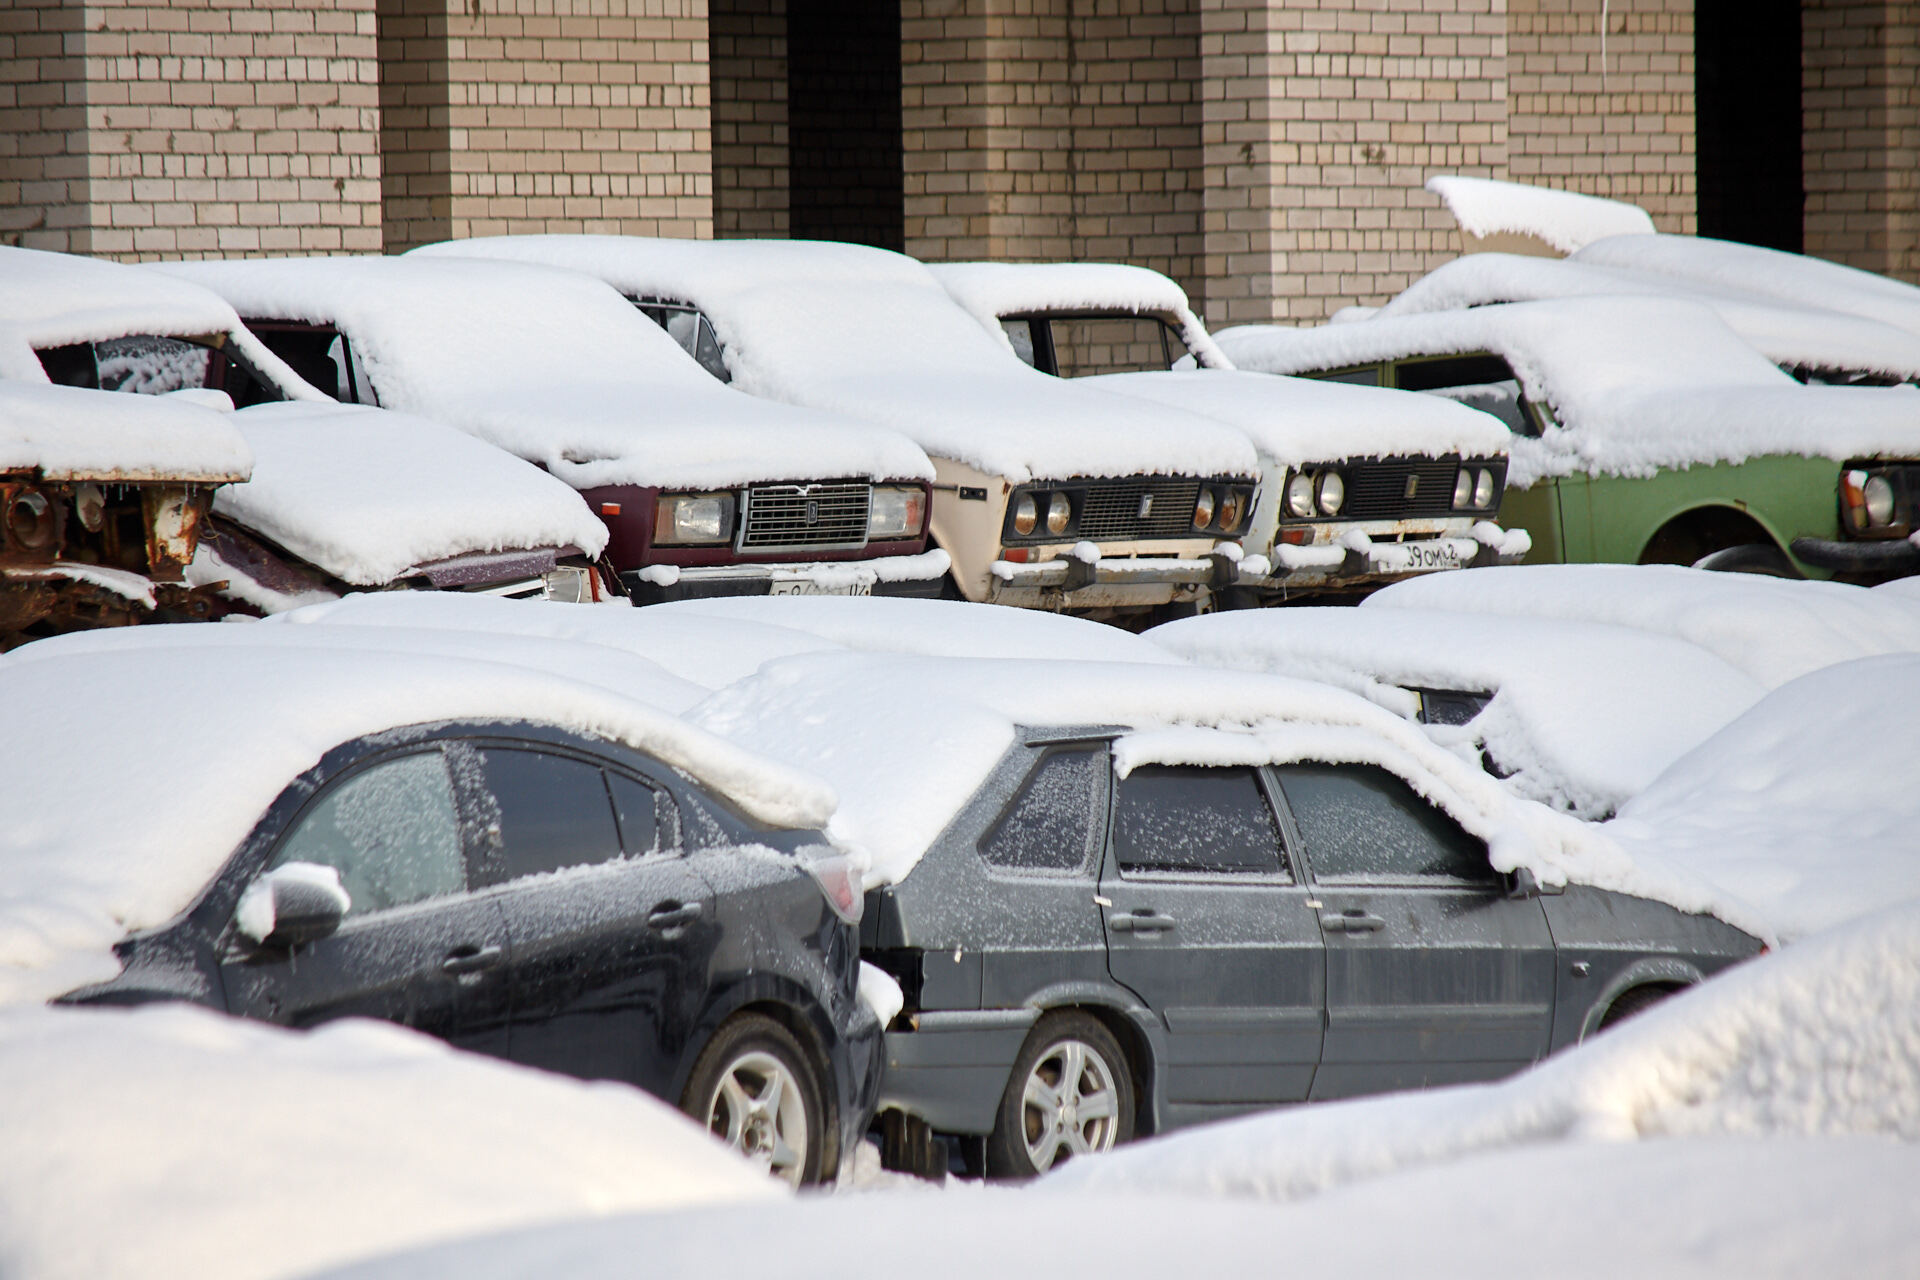 Как подготовить авто к хранению зимой - на улице, в гараже или под навесом